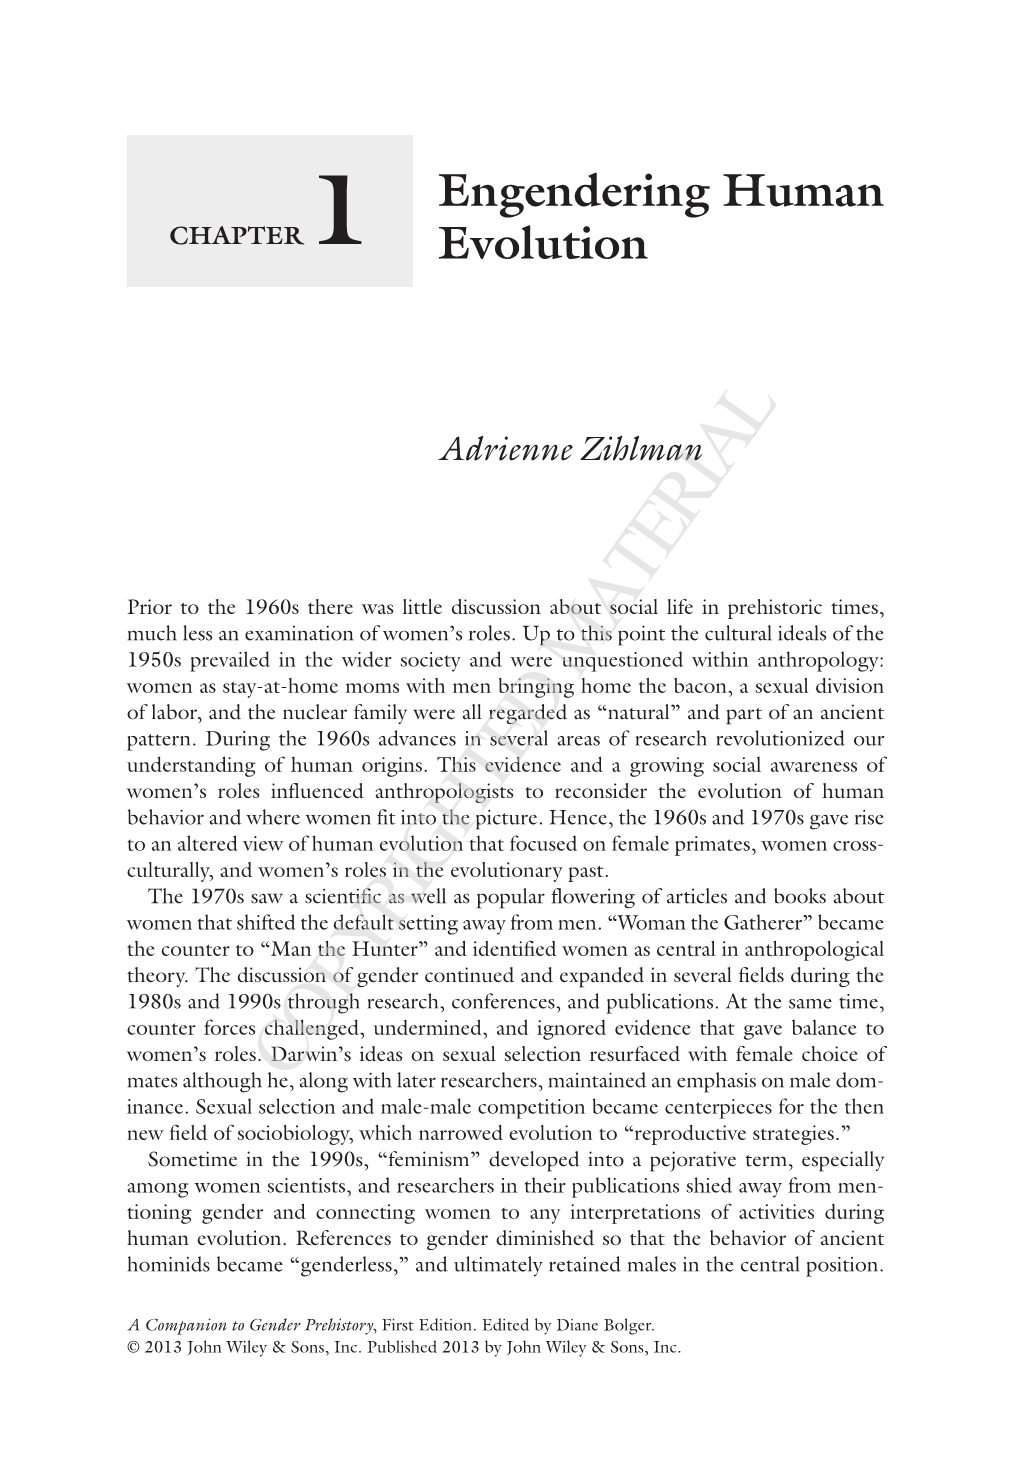 Engendering Human Evolution Adrienne Zihlman